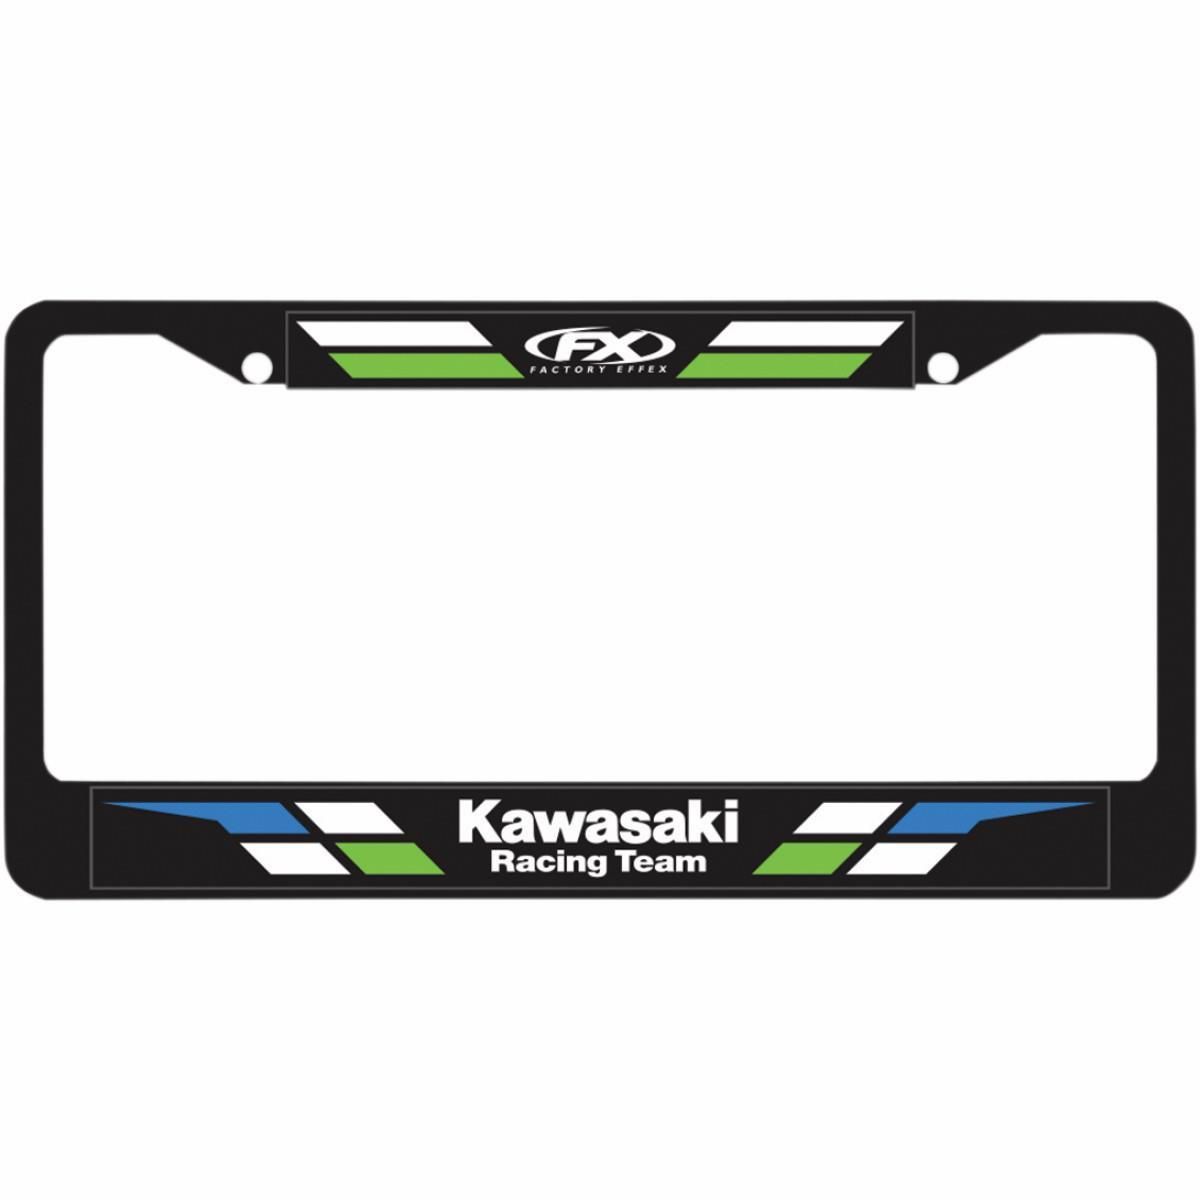 2542-FACTORY-EFF-19-45100 License Plate Frames - Kawasaki